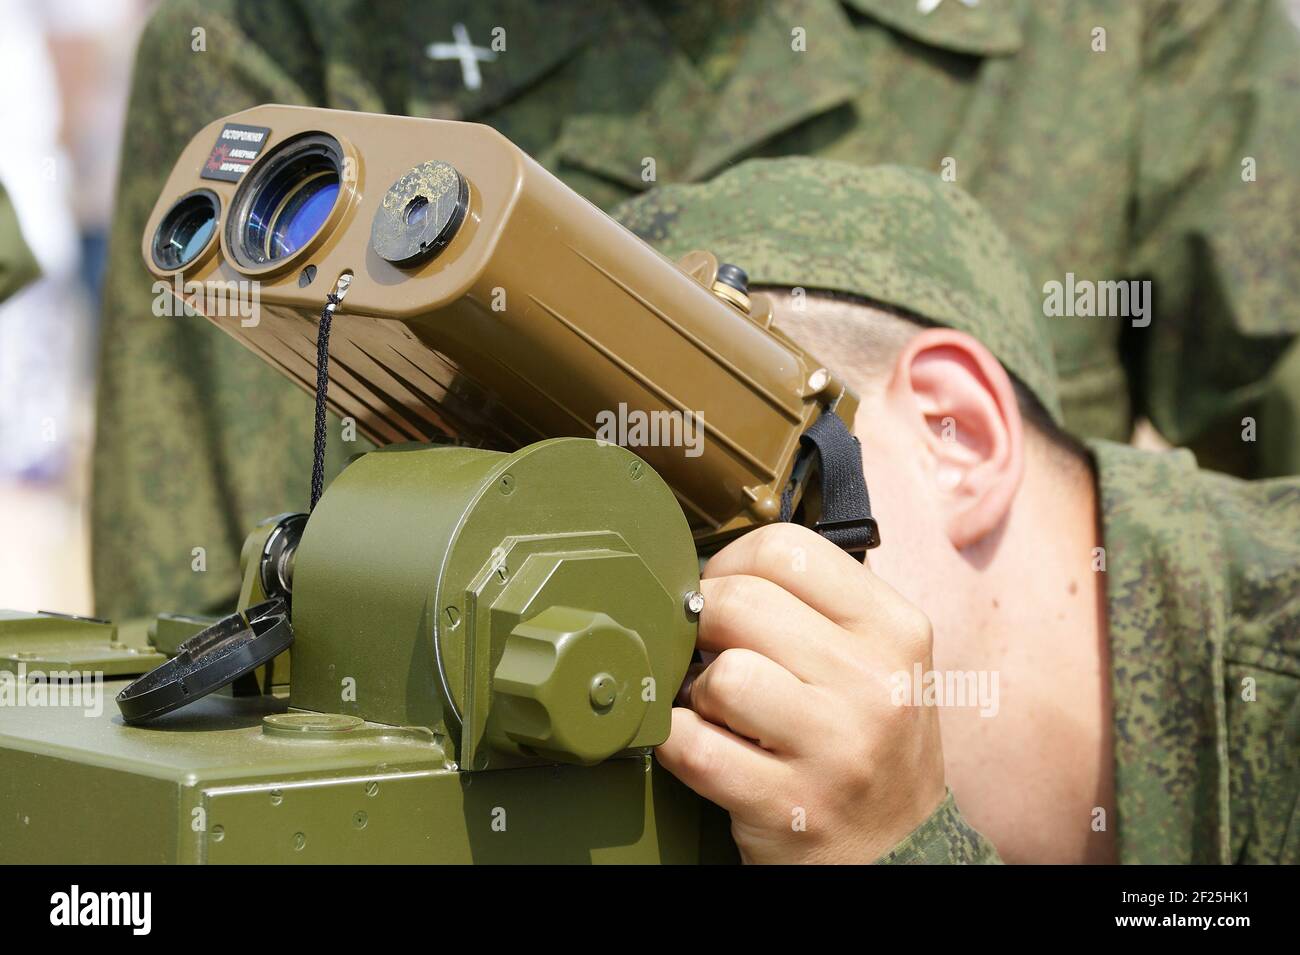 Das Militär sucht nach einem Laser-Entfernungsmesser, 2010, Russland  Stockfotografie - Alamy